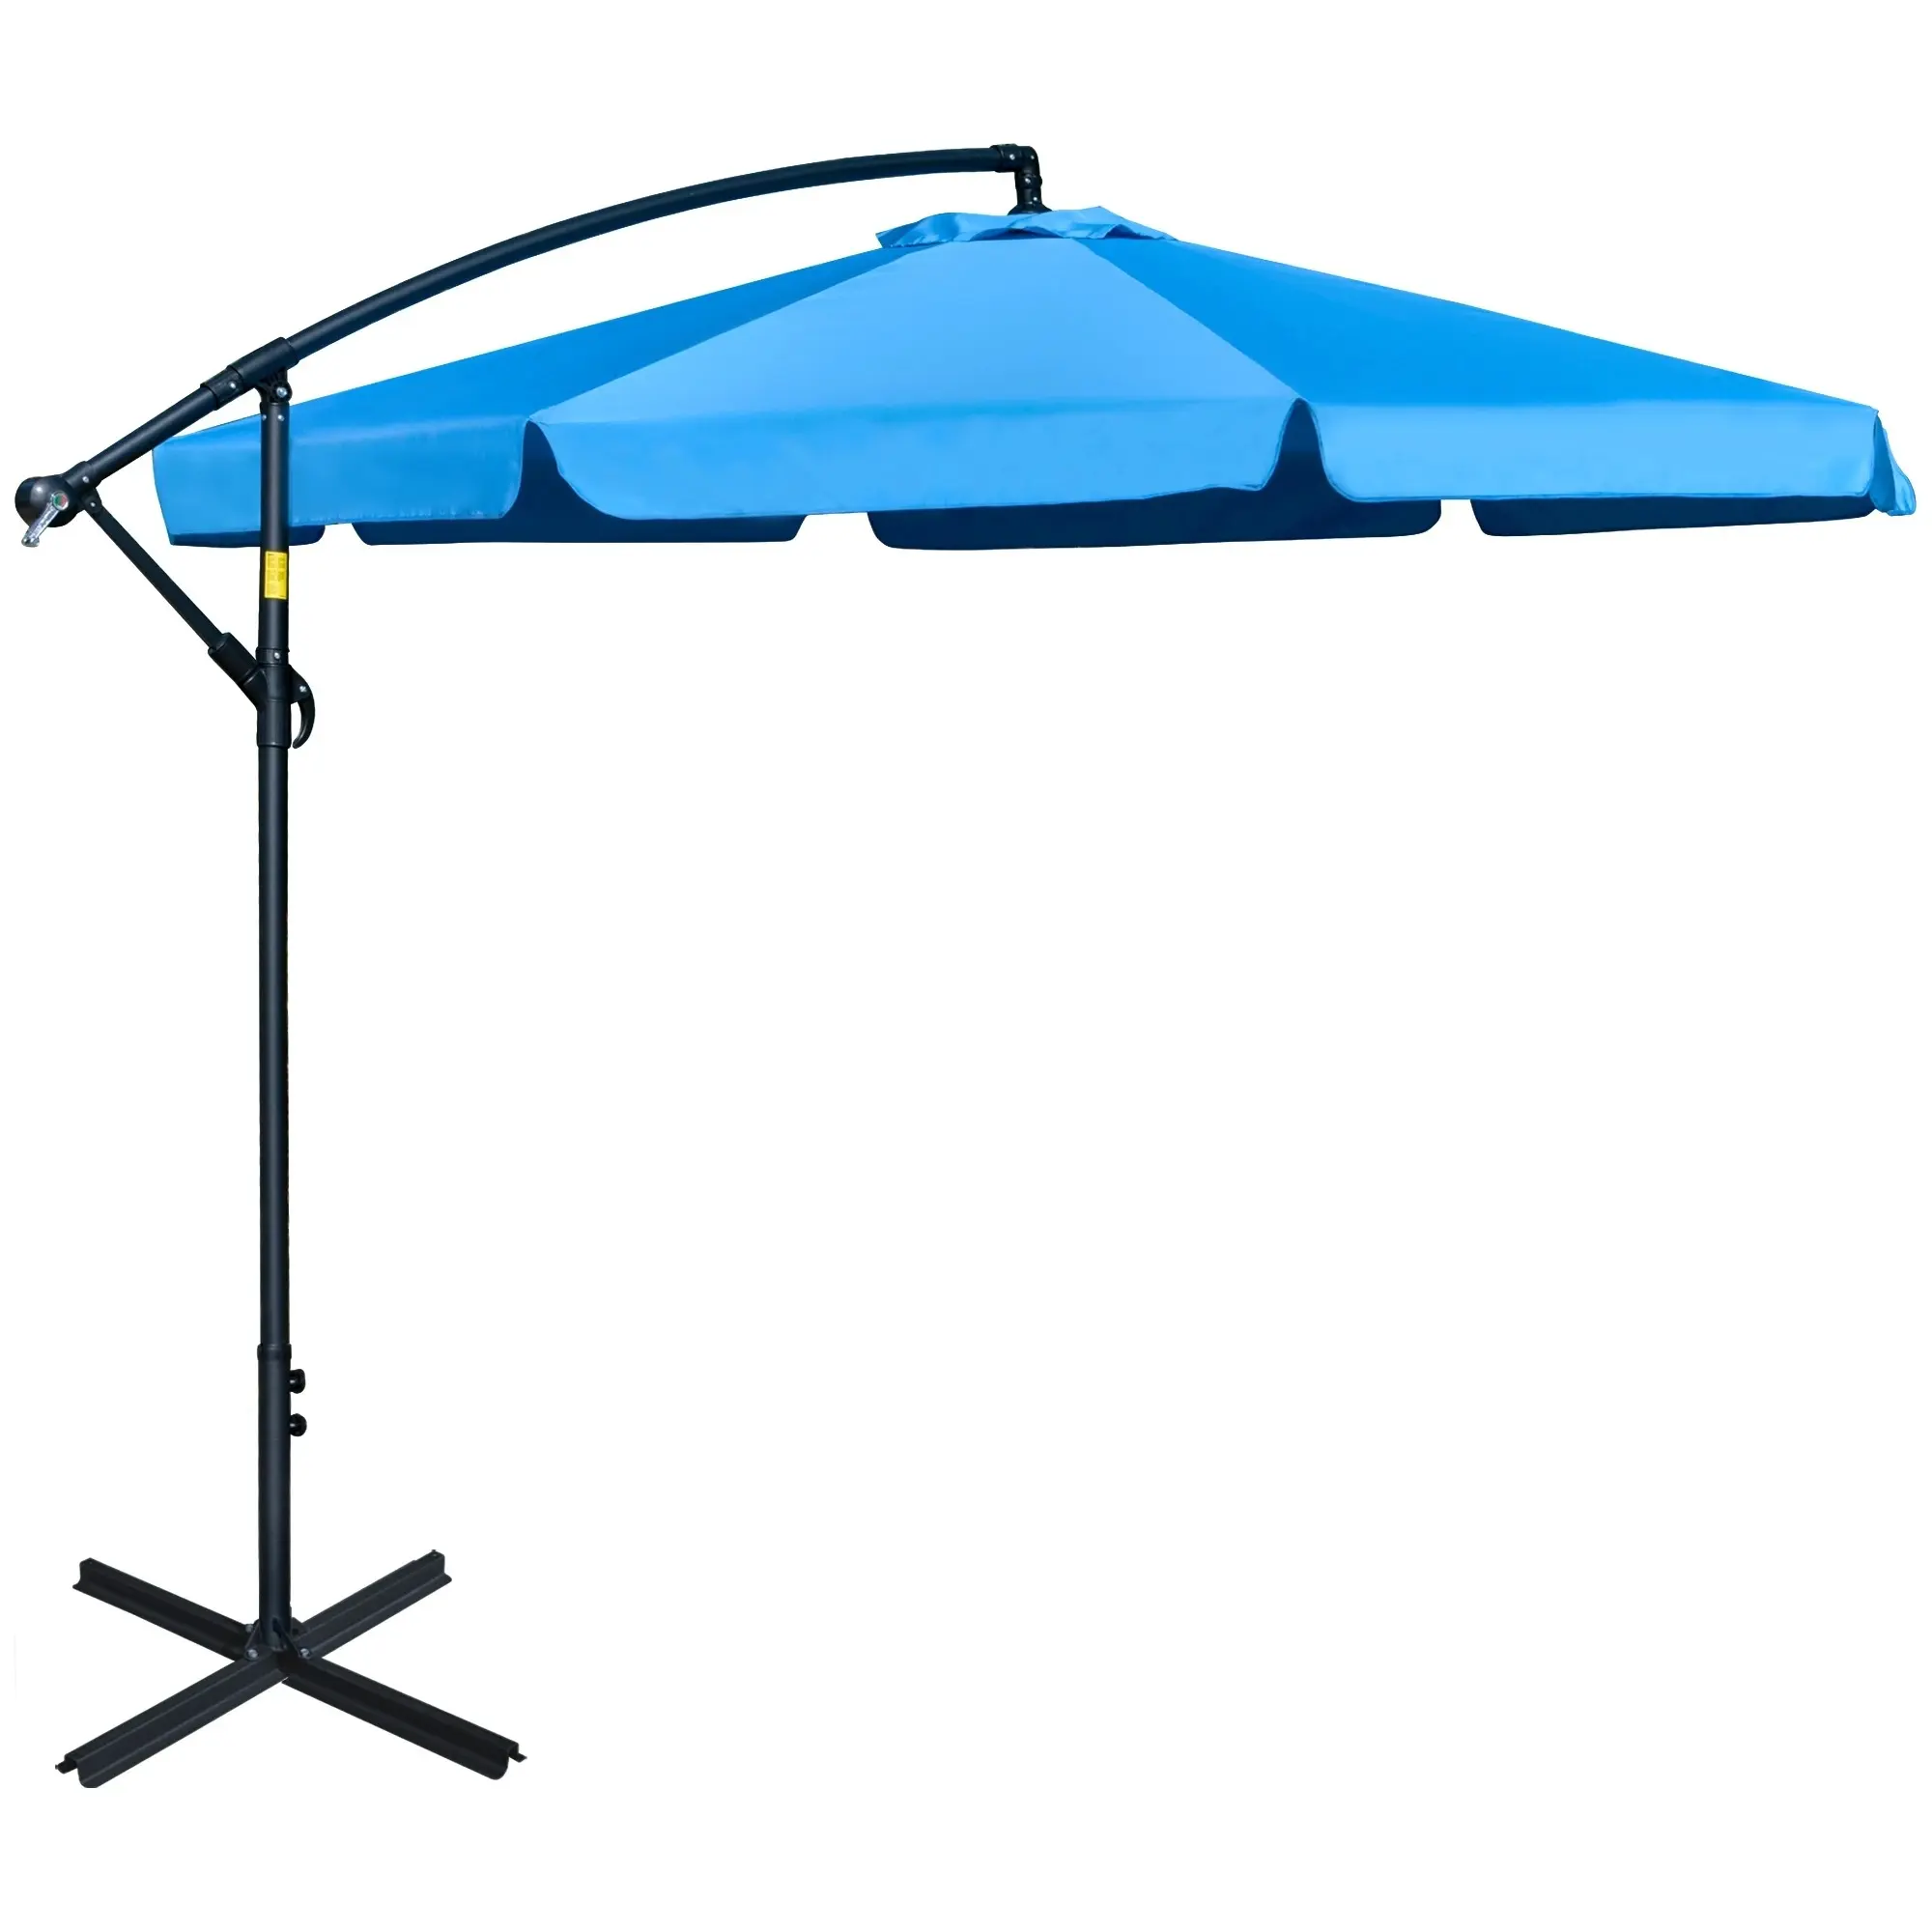 Guarda-chuva externo de 10ft, guarda-chuva para área externa, palmeira, mercado grande, guarda-chuva para trás de jardim, com 8 bordas resistentes, manivela